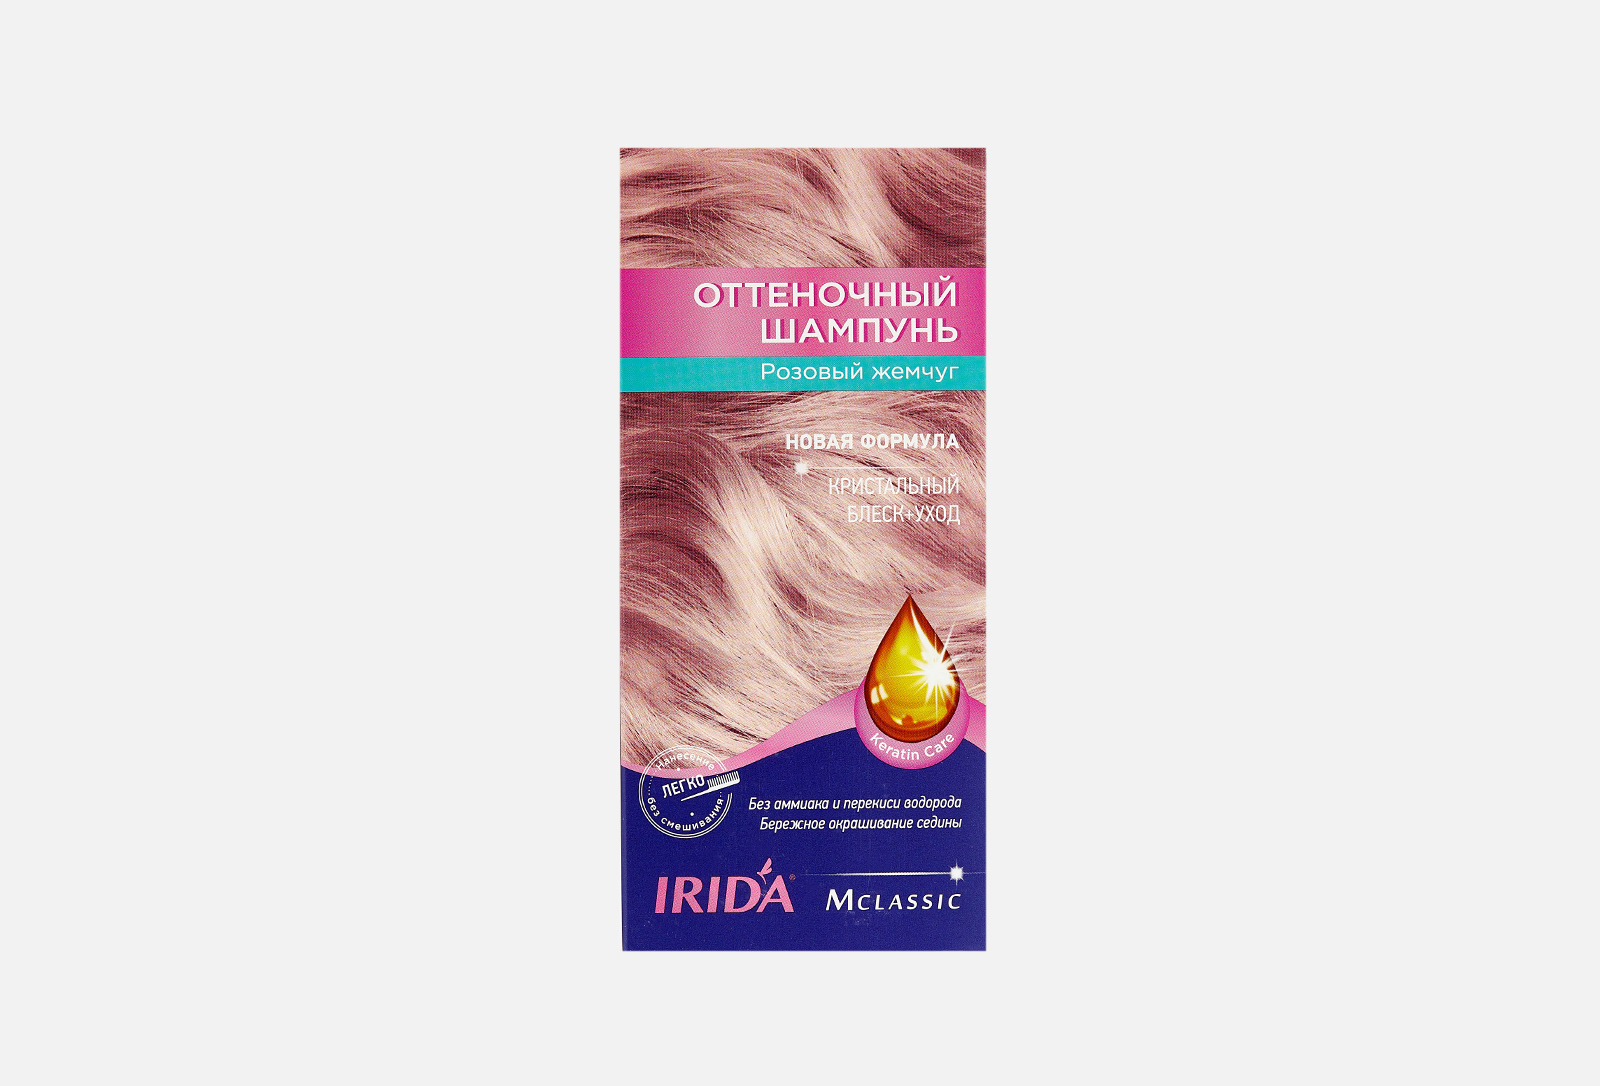 Оттеночный шампунь для волос Ирида. Ирида оттеночный шампунь розовый жемчуг. Irida оттеночный шампунь розовый жемчуг. Ирида оттеночный шампунь розовый.